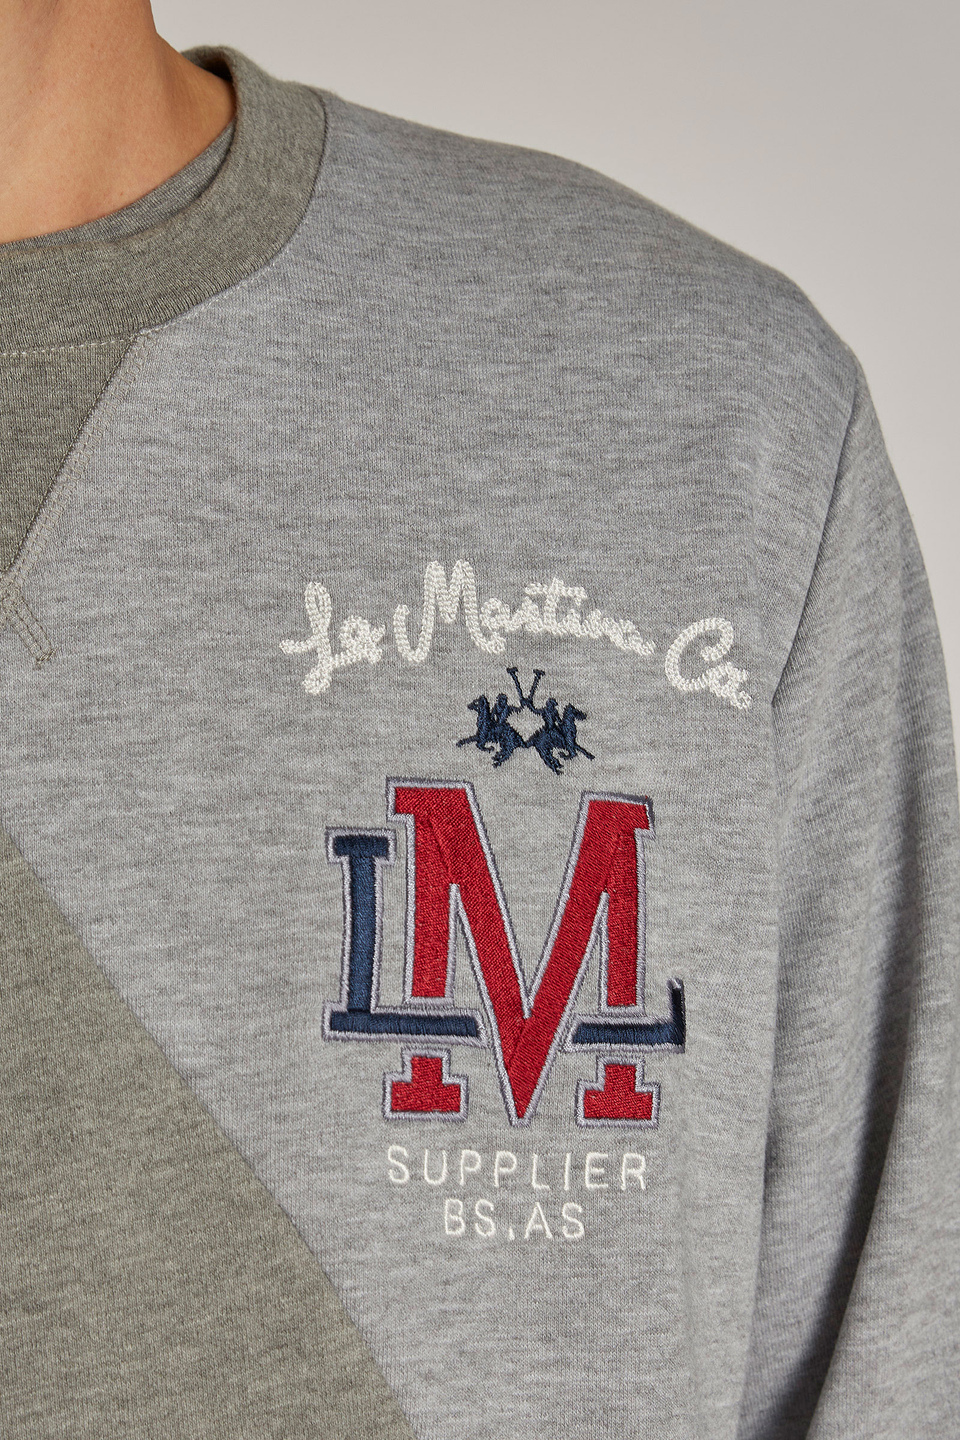 Herren-Sweatshirt aus 100 % Baumwolle mit runden Ausschnitt im Regular Fit | La Martina - Official Online Shop